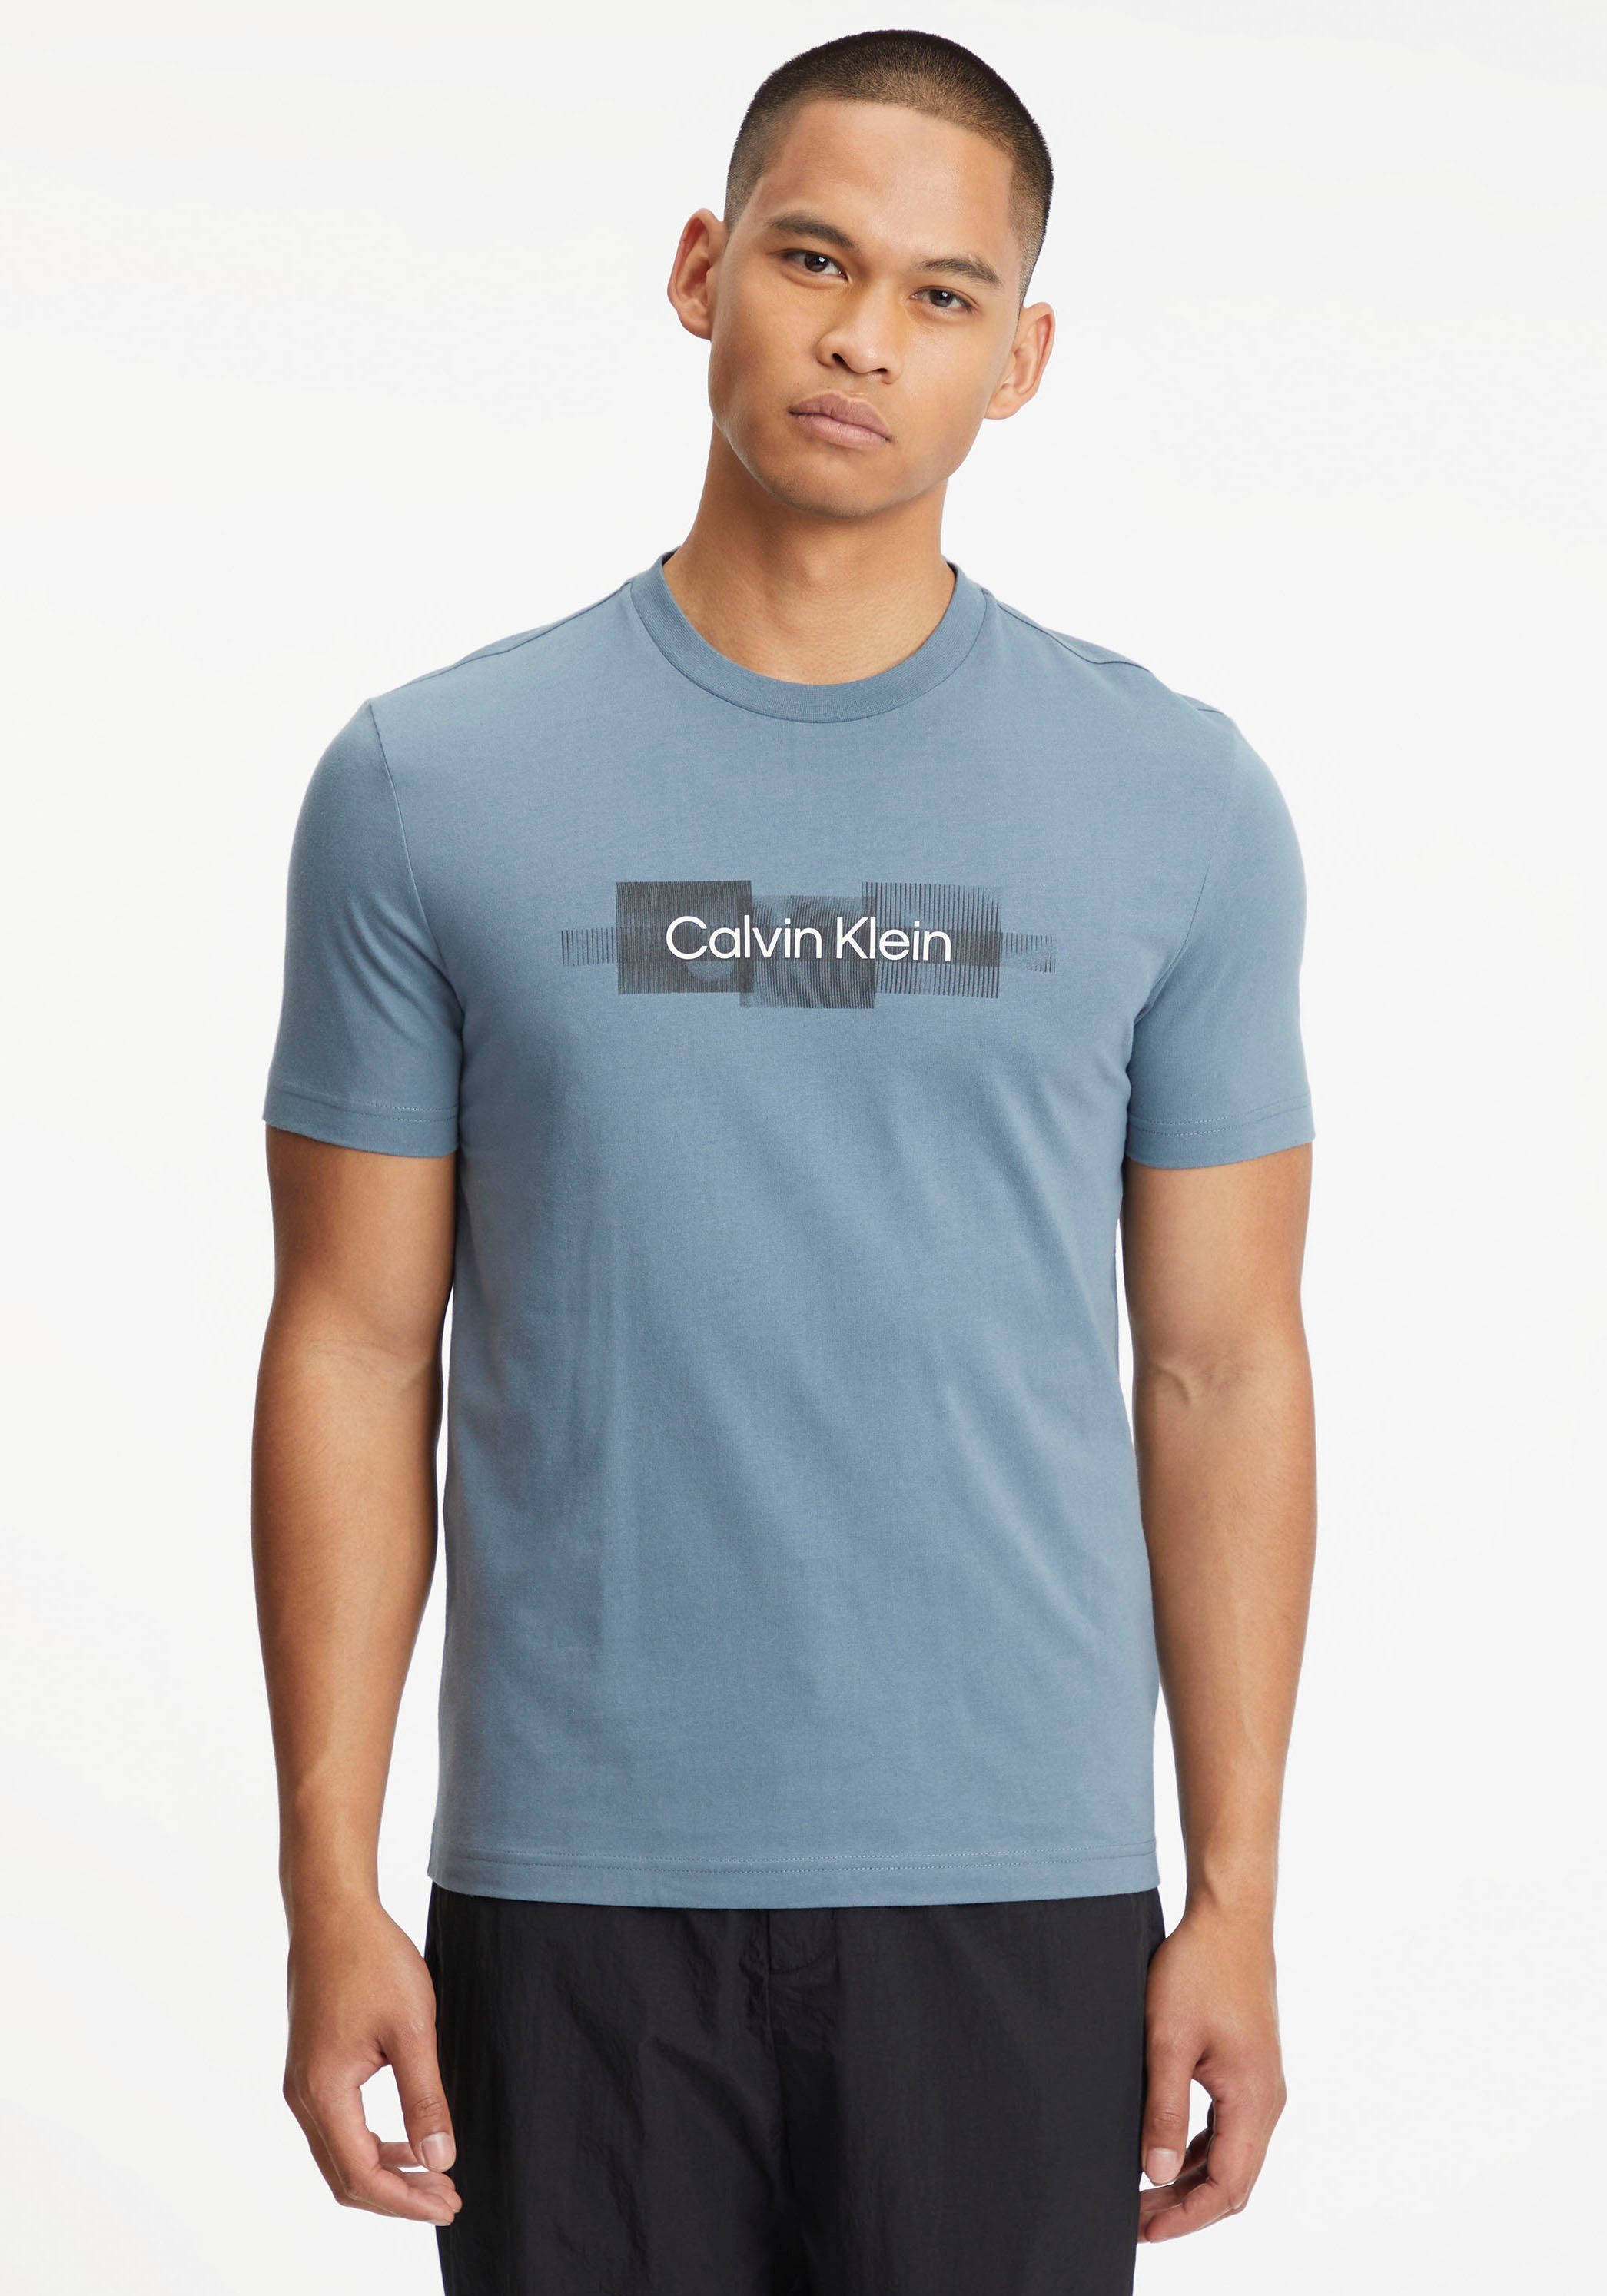 Calvin Klein T-Shirt BOX LOGO Grey T-SHIRT reiner aus STRIPED Baumwolle Tar